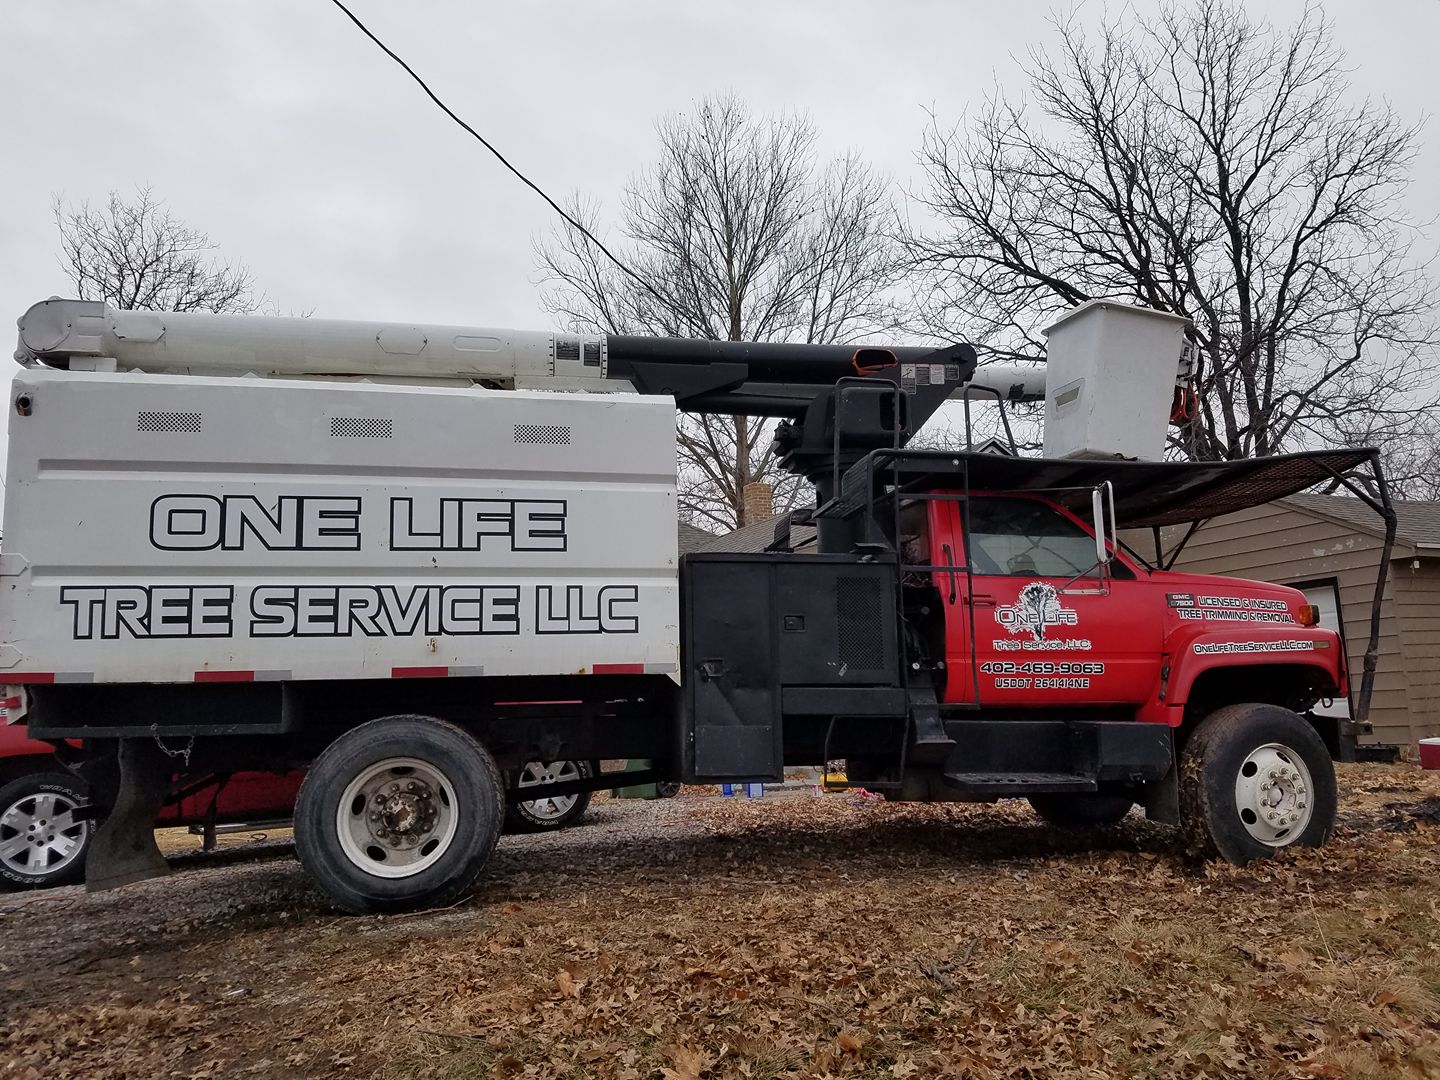 Tree service in lincoln nebraska 5655.jpg